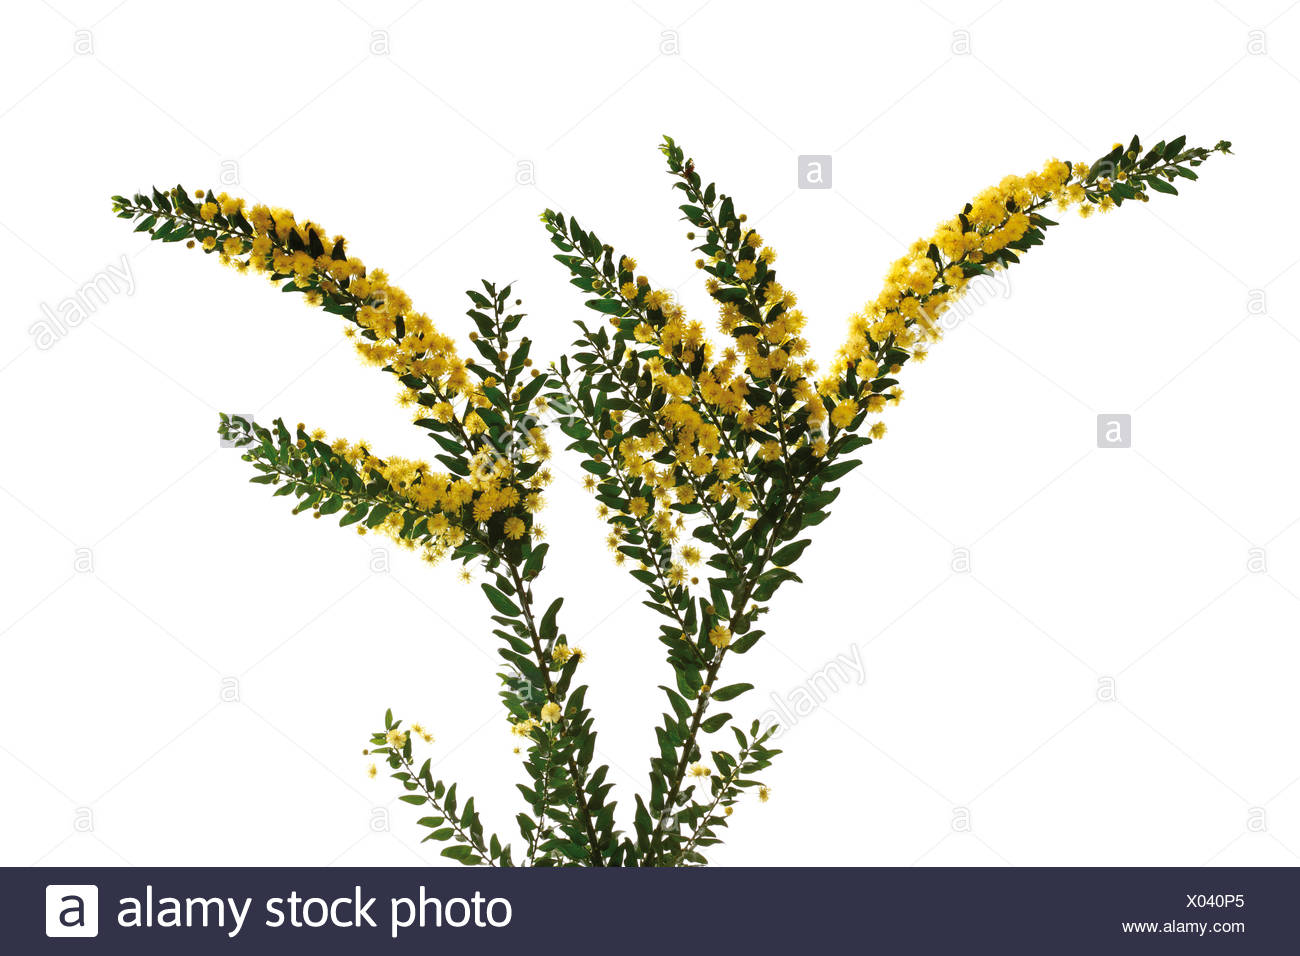 Kanguru Blume Kanguru Pfotchen Anigozanthos Beliebte Pflanzen Erfahrungen Green24 Hilfe Pflege Bilder